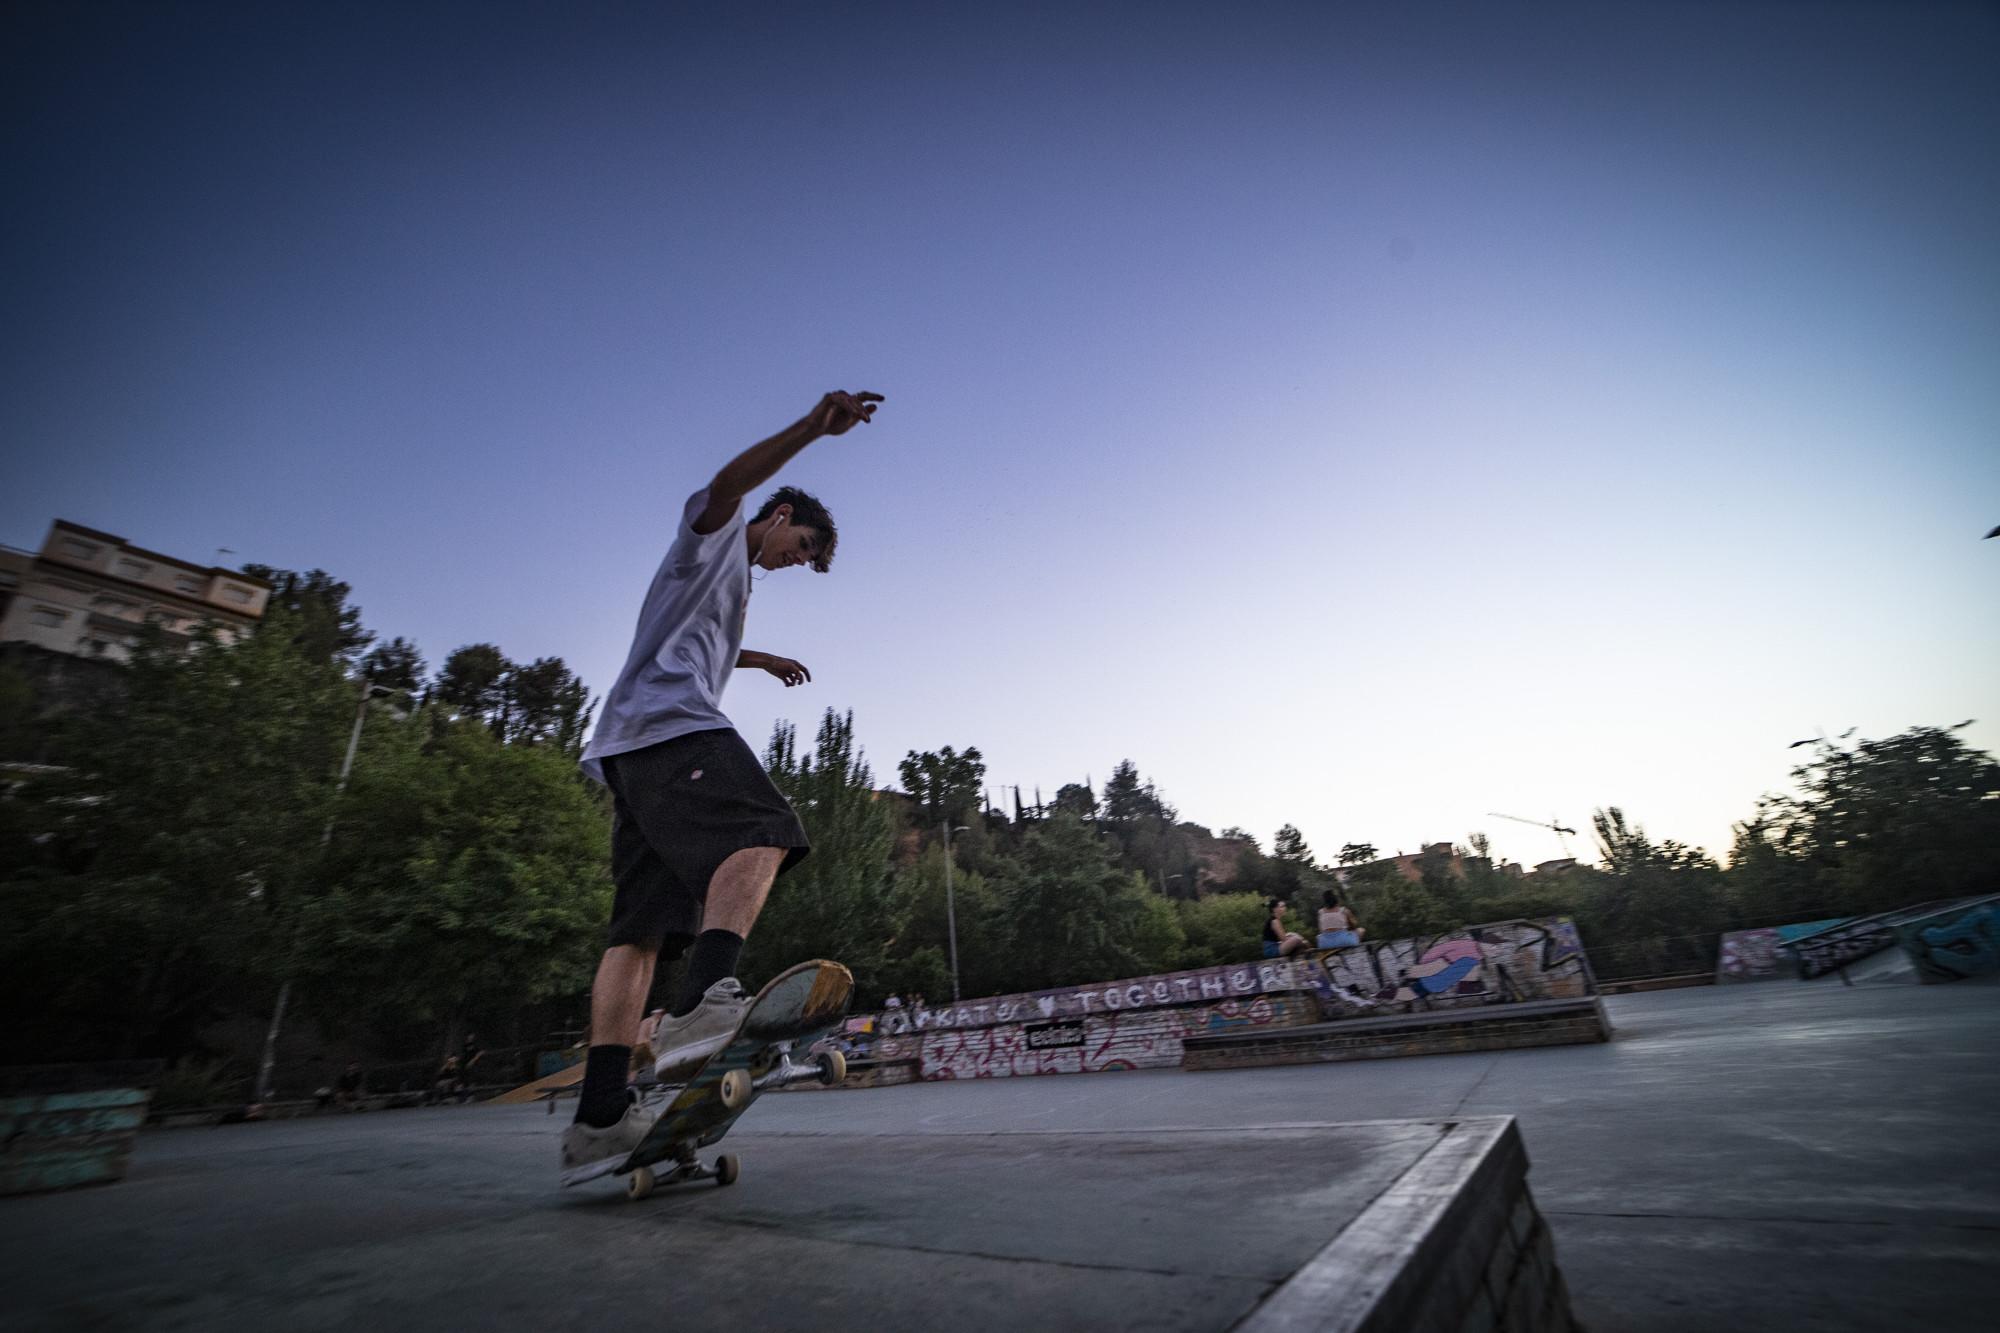 Skaters en el skatepark Bola de Oro, Granada - 12